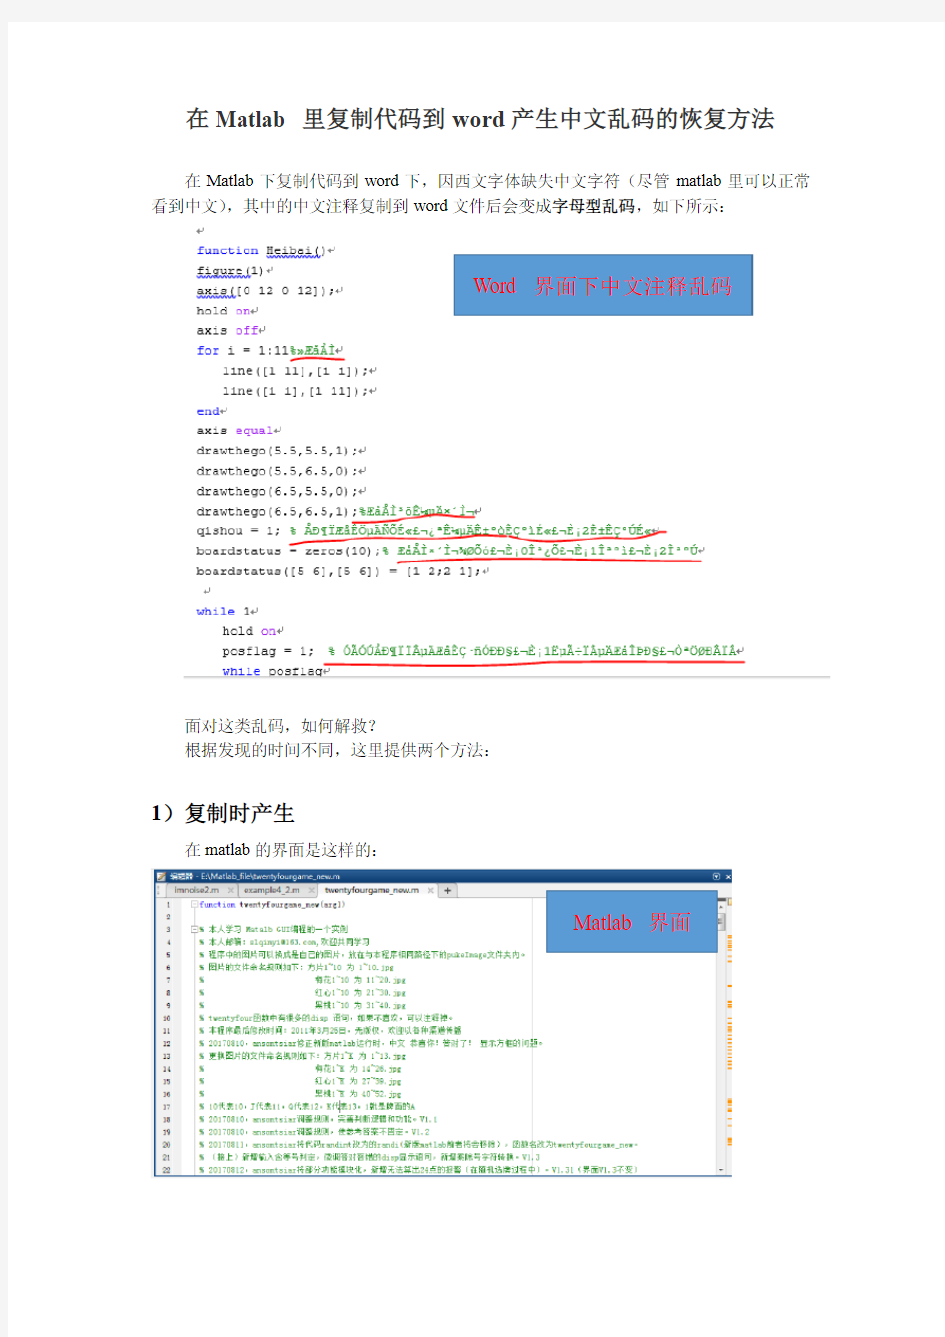 在Matlab 里复制代码到word产生中文乱码的恢复方法